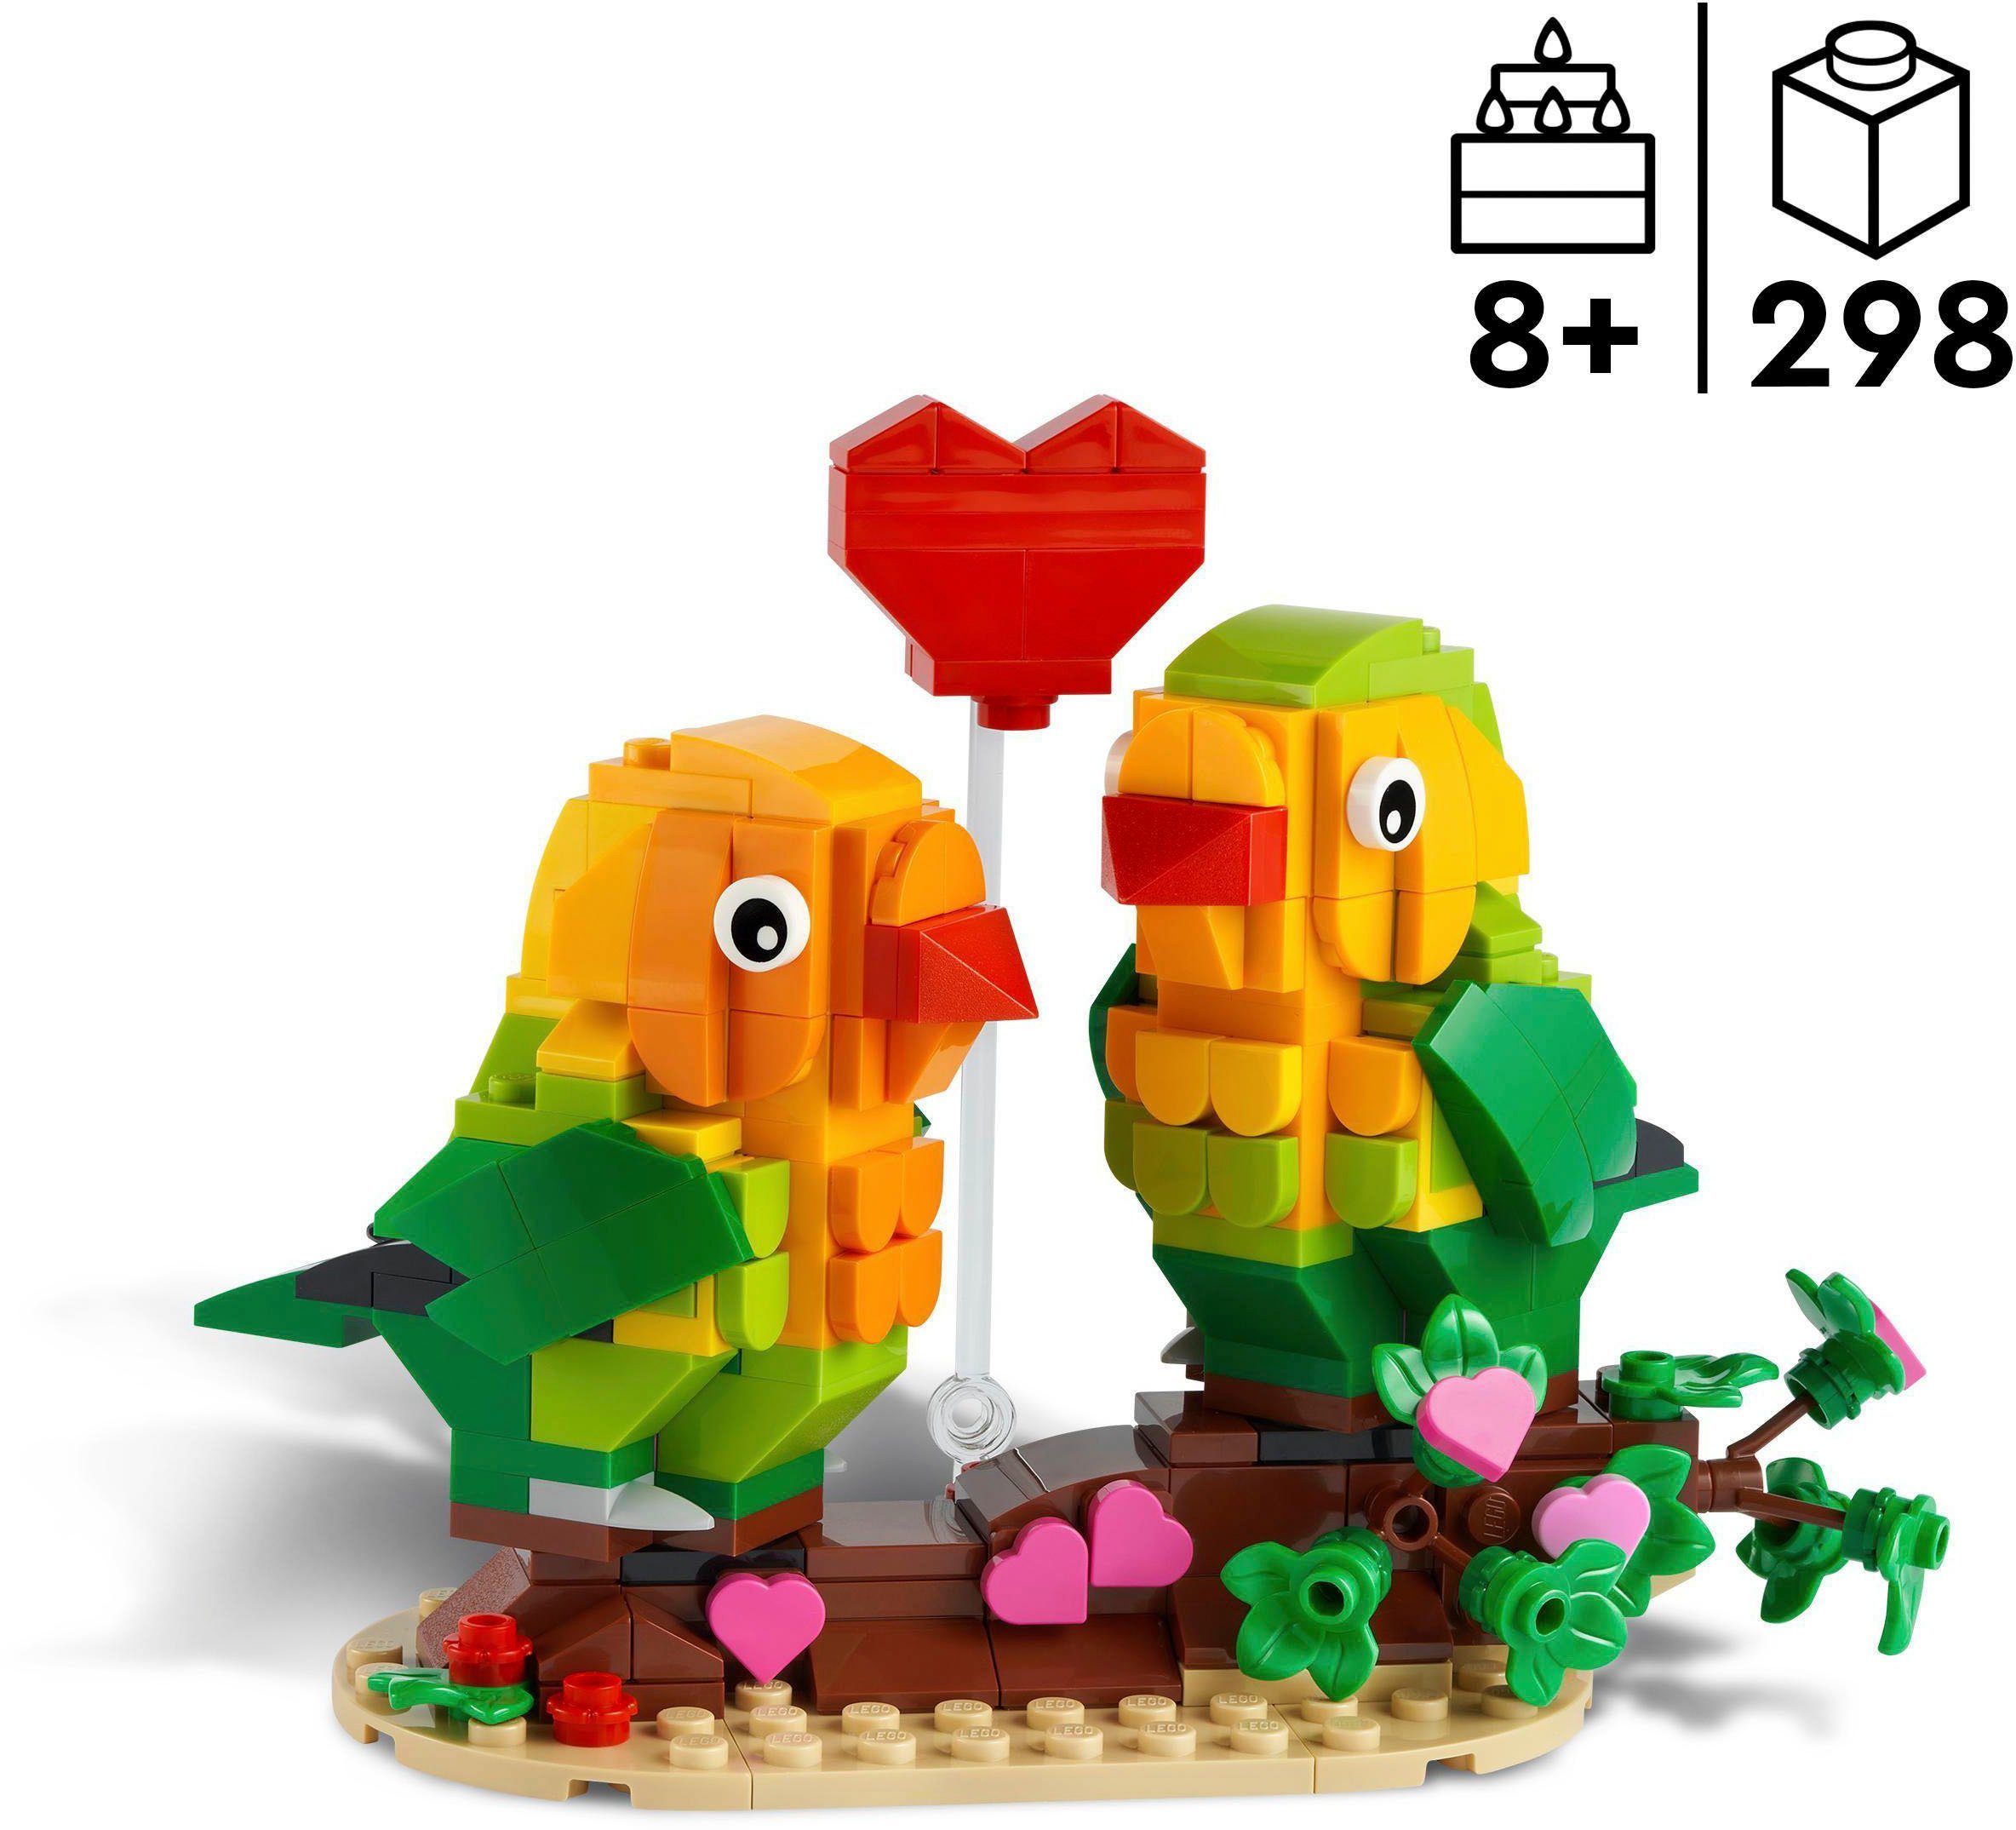 Europe Konstruktionsspielsteine LEGO® Made (298 St), in Valentins-Turteltauben (40522), LEGO®,